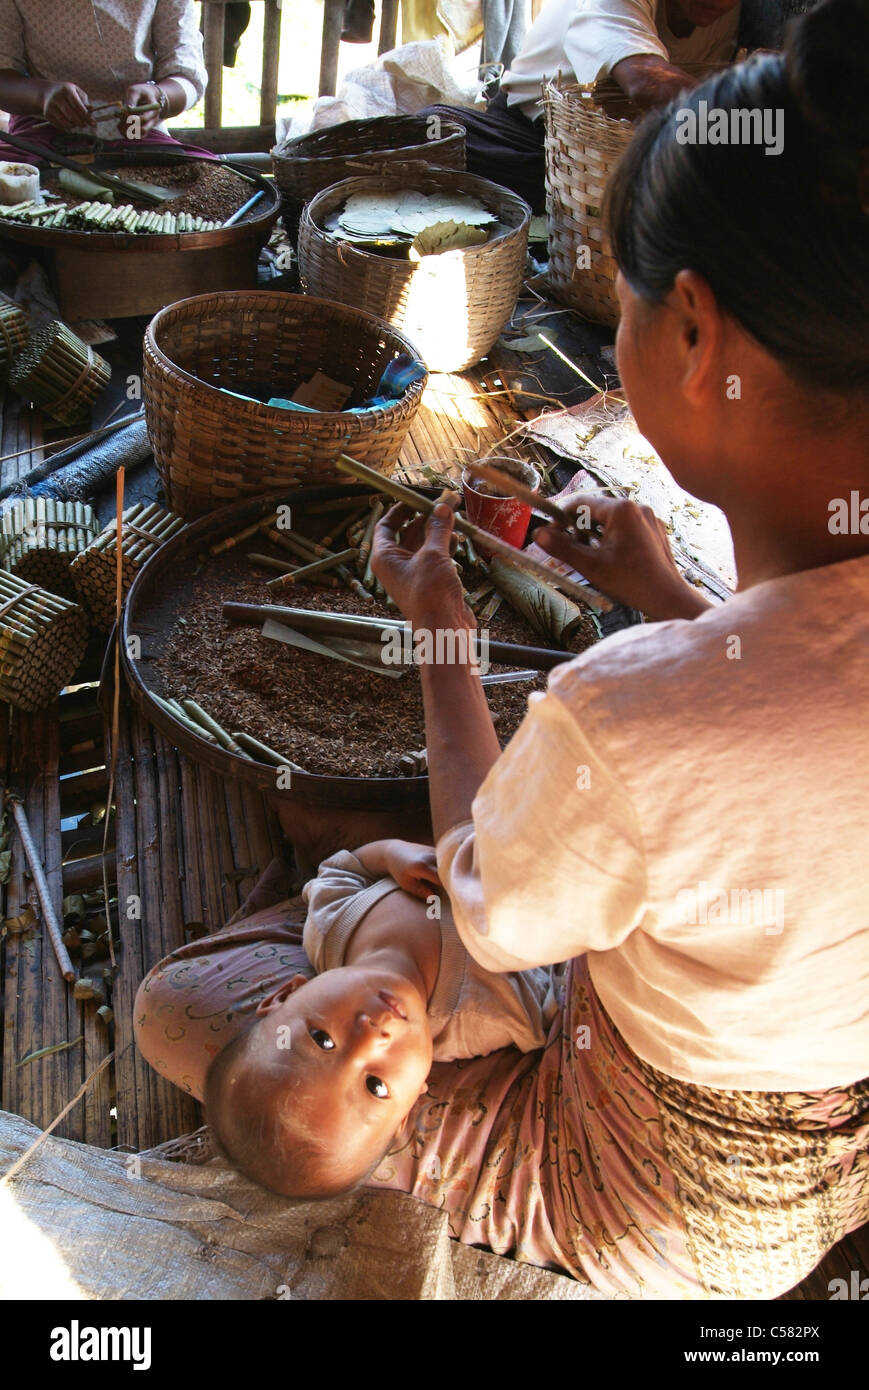 L'Asie, Birmanie, Myanmar, le lac Inle, femme, travail, industrie textile, enfant Banque D'Images